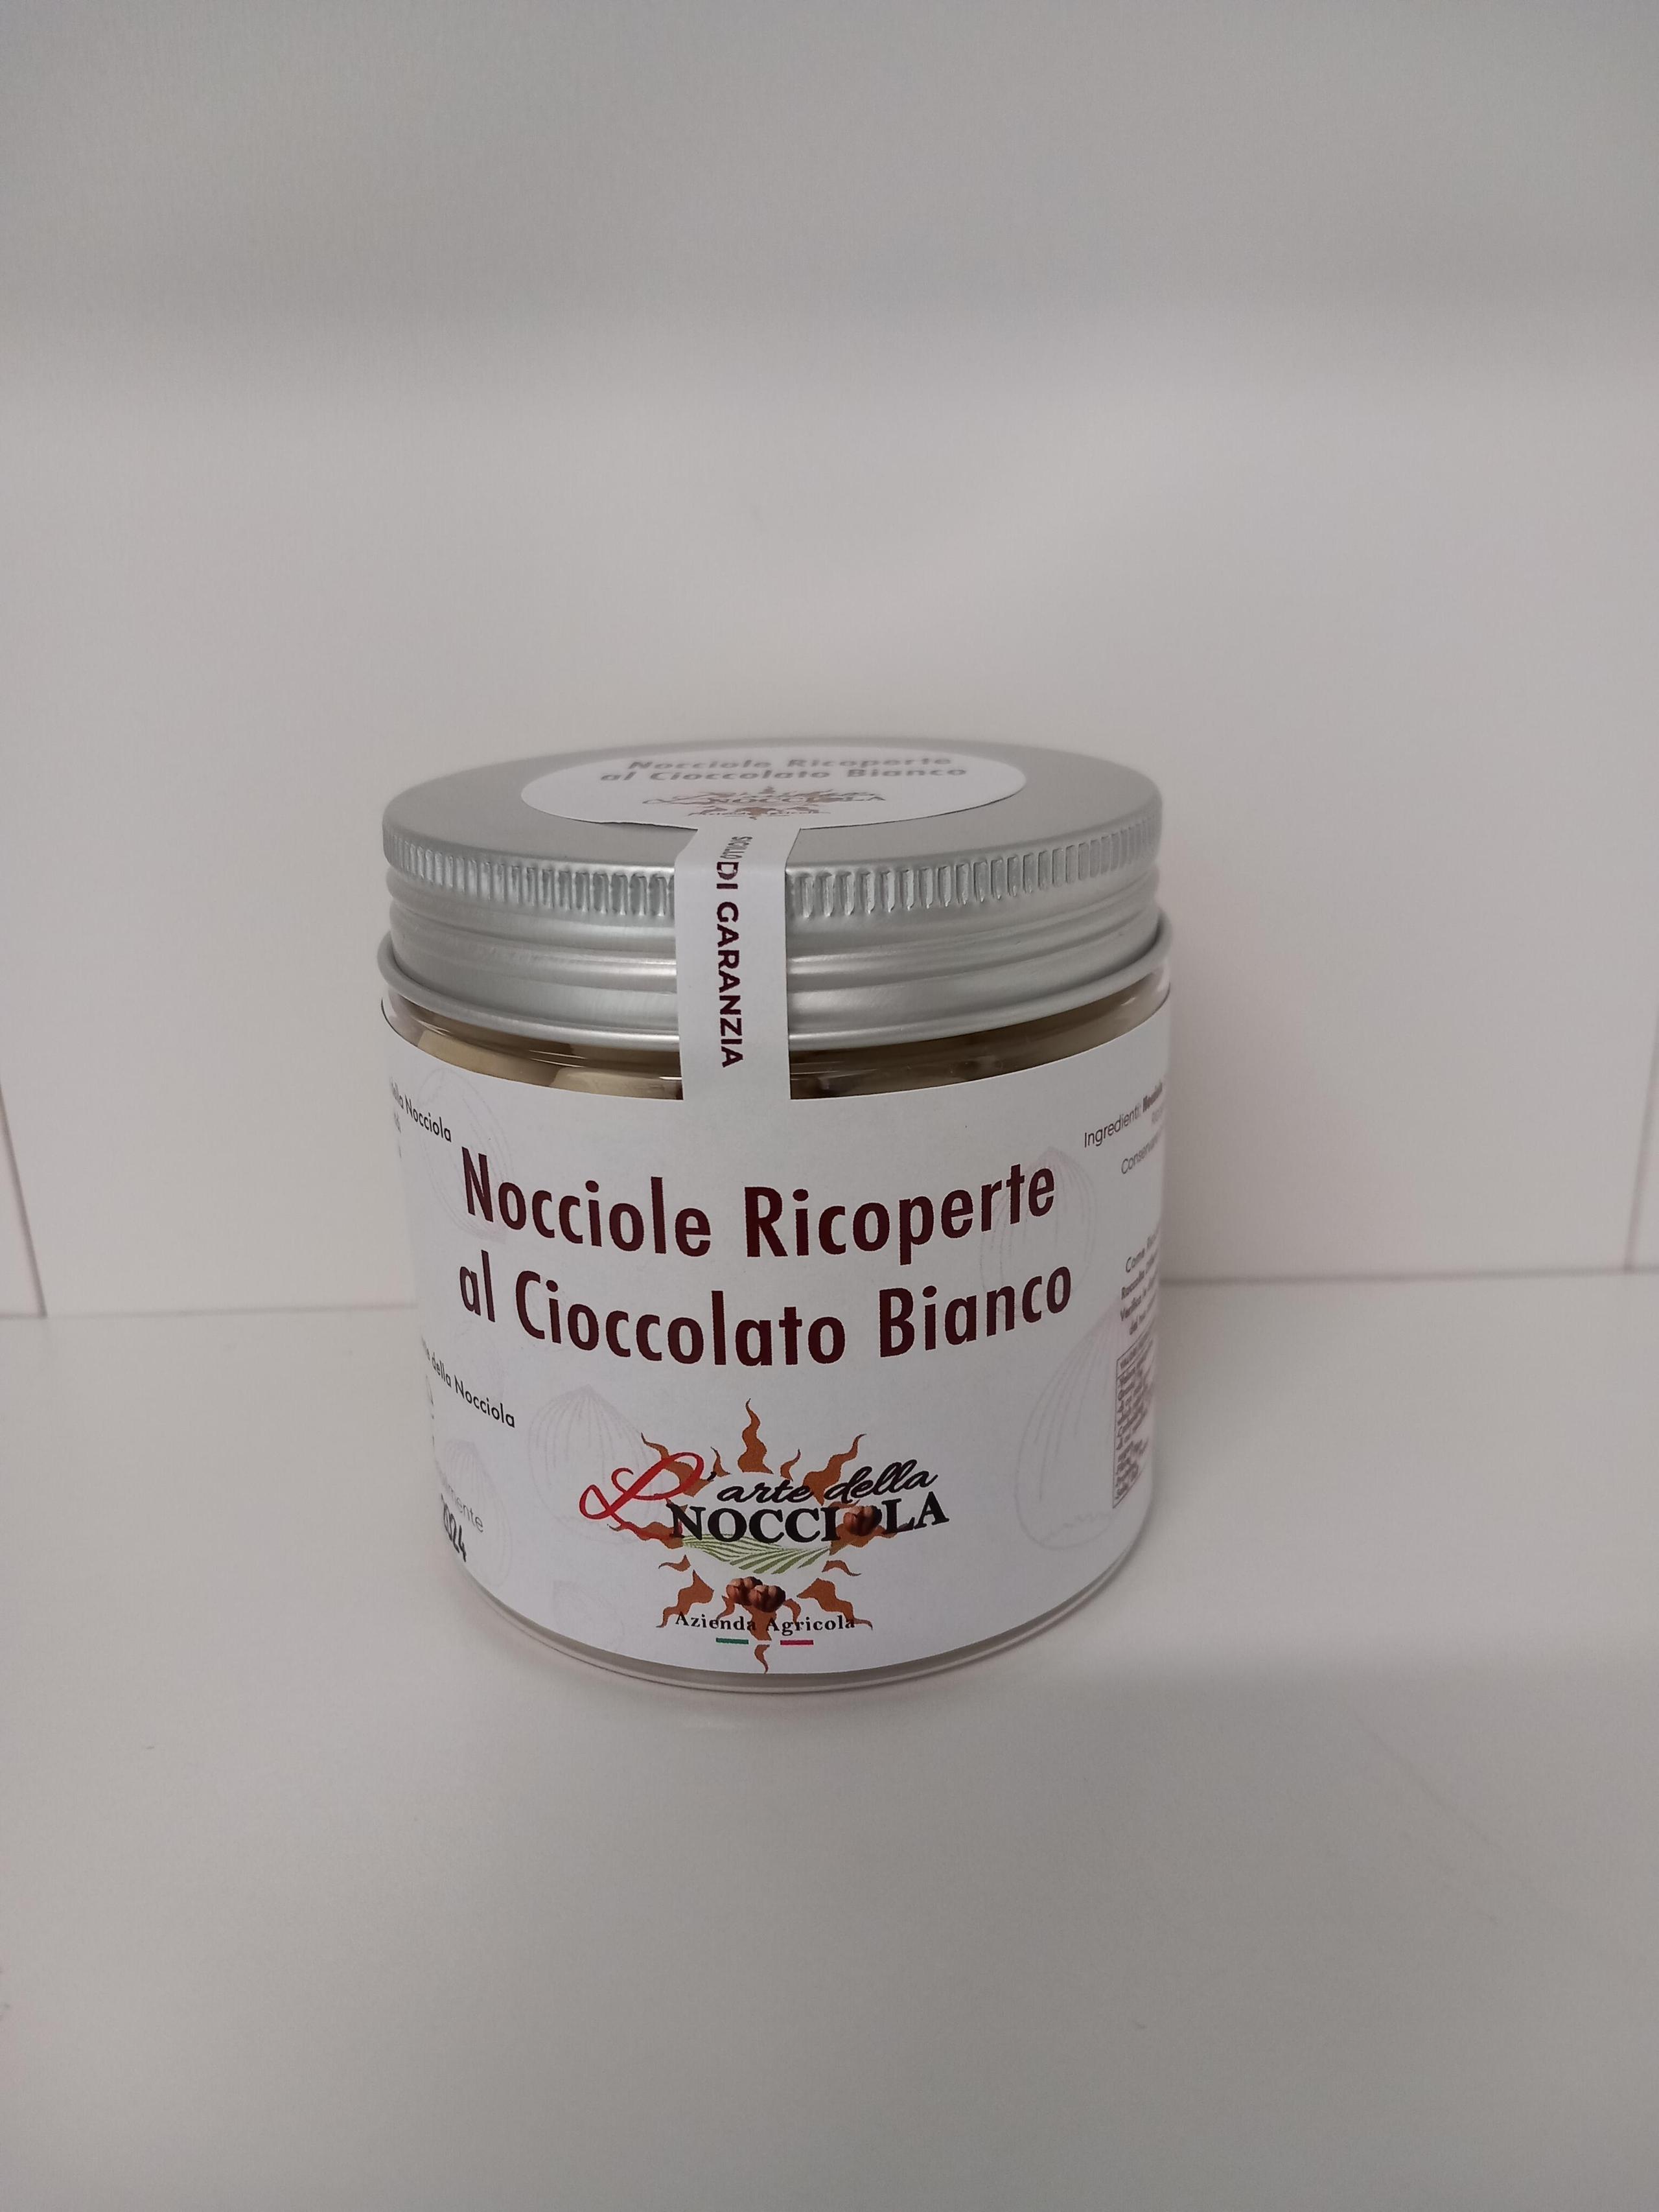 Nocciole Ricoperte al Cioccolato Bianco (Novita ) /White Chocolate Covered Hazelnuts